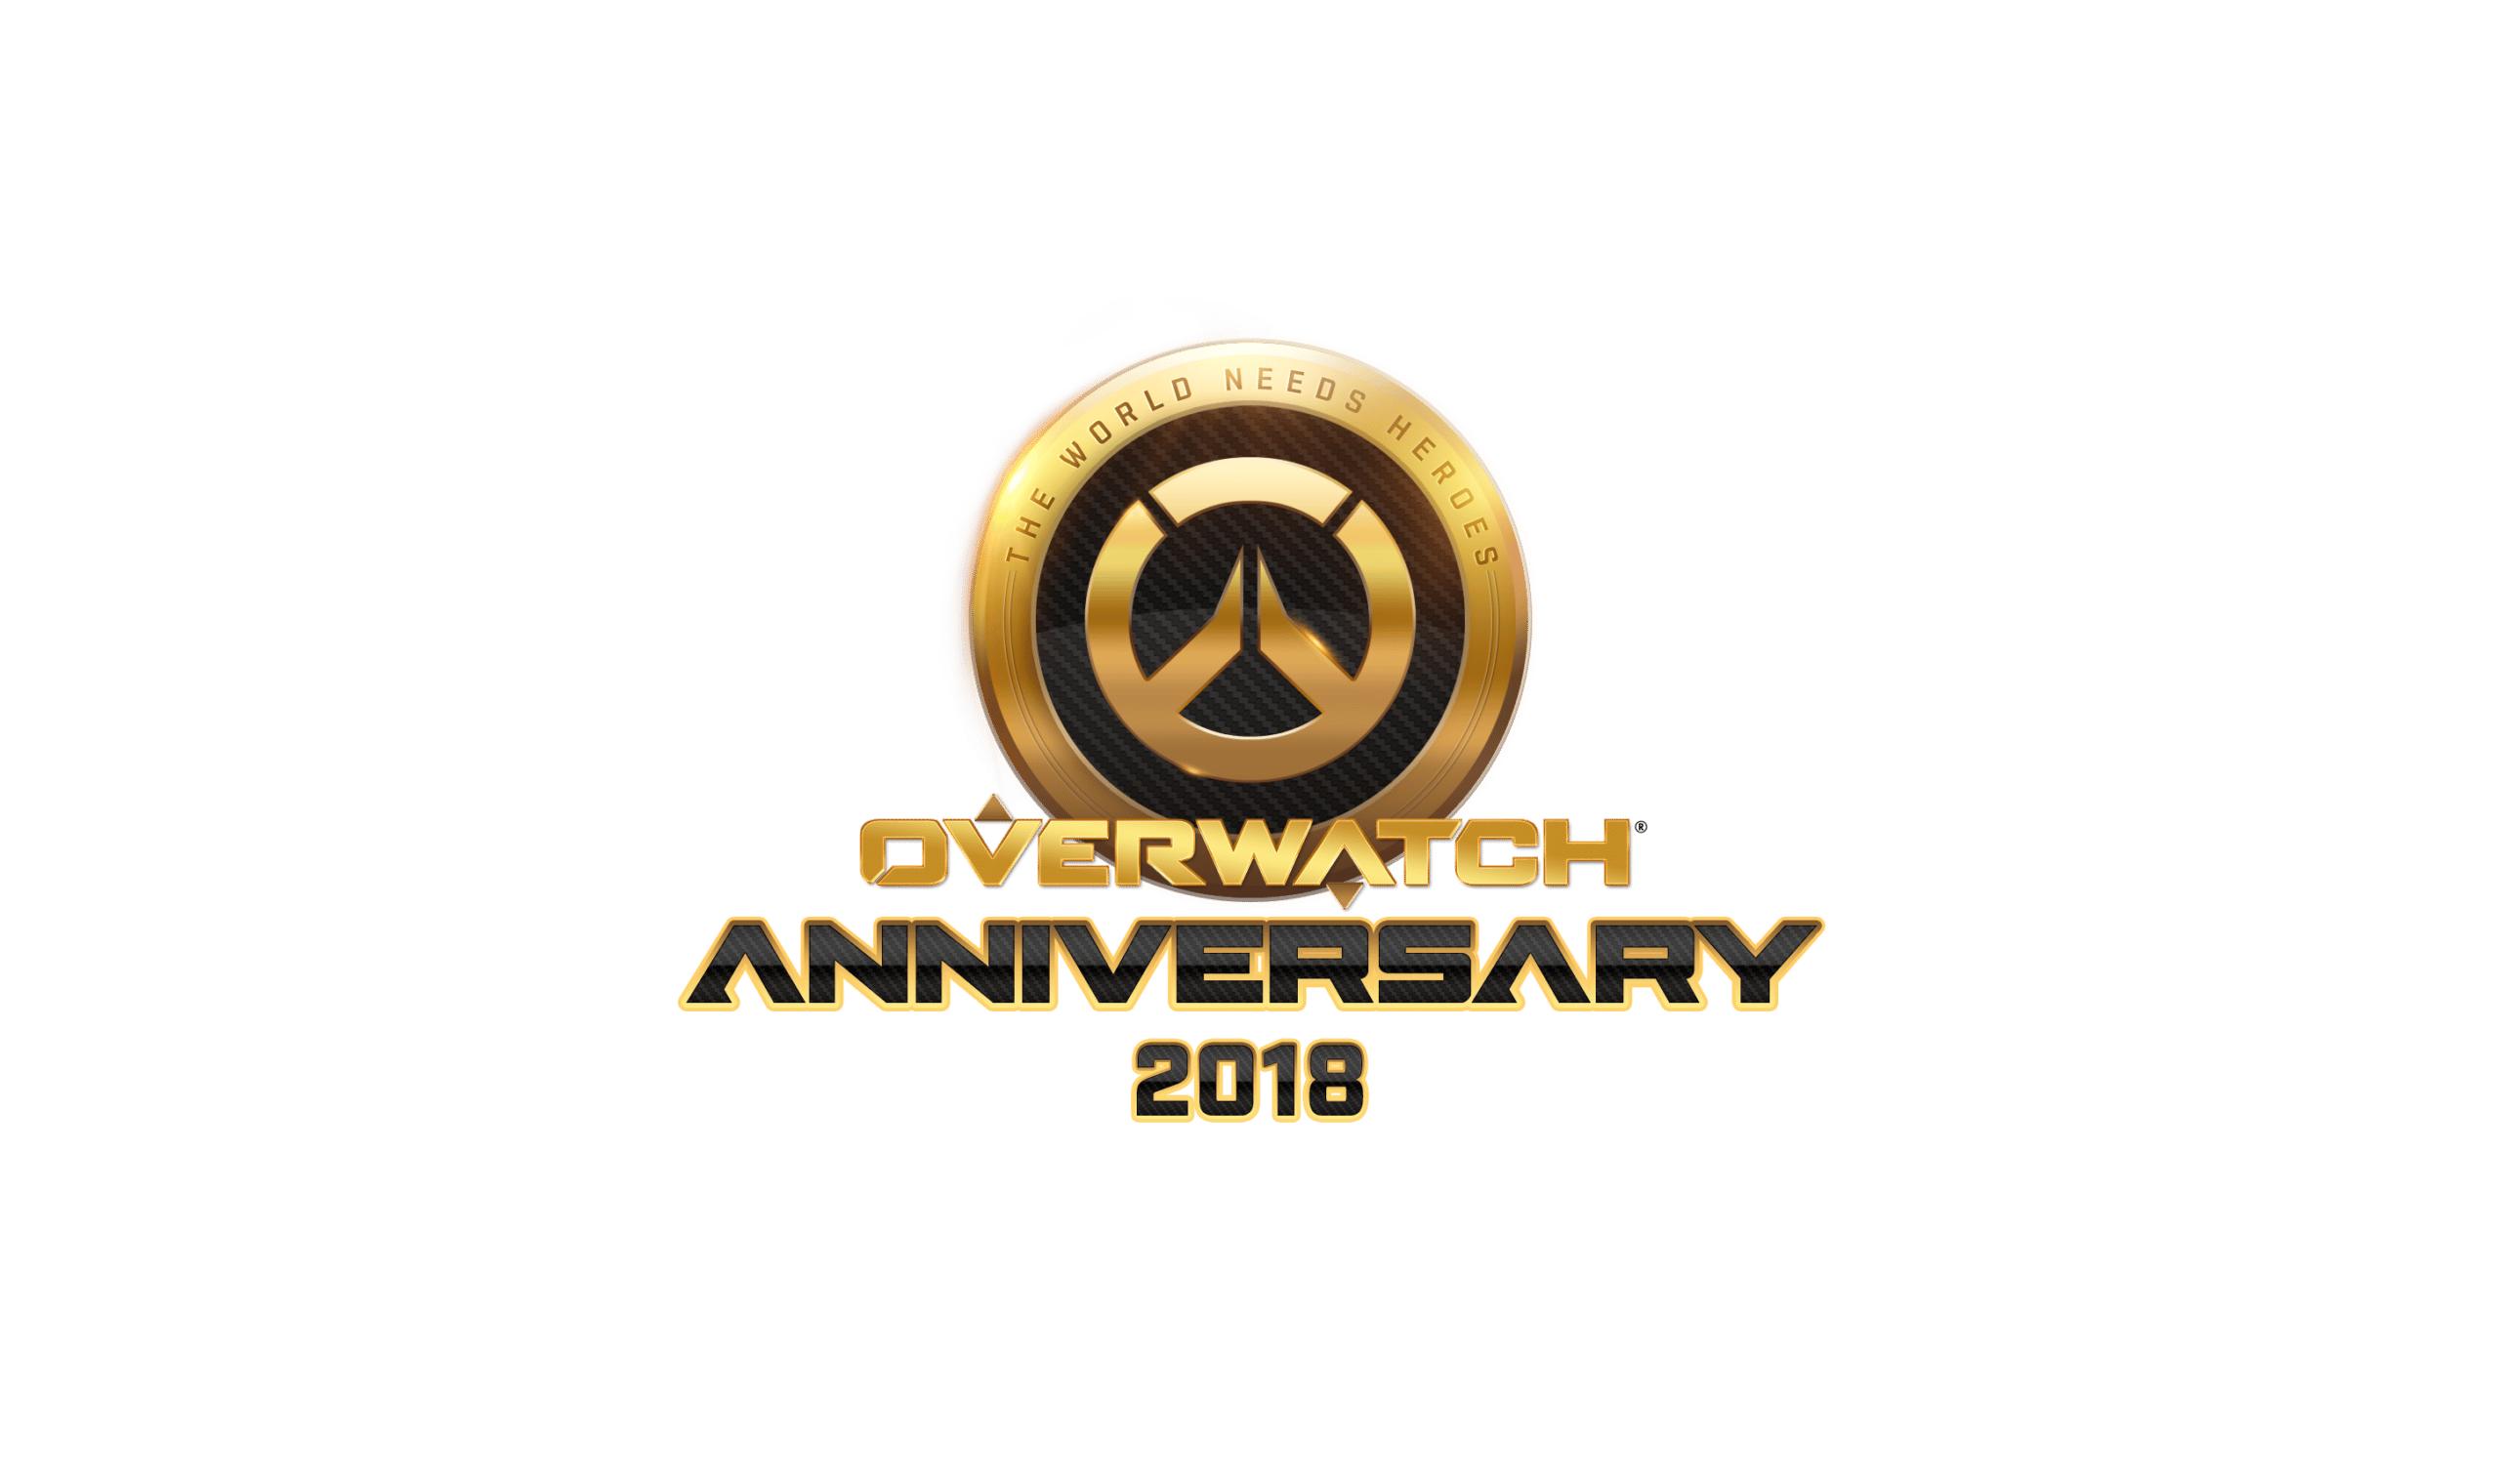 Overwatch 2018 Anniversary